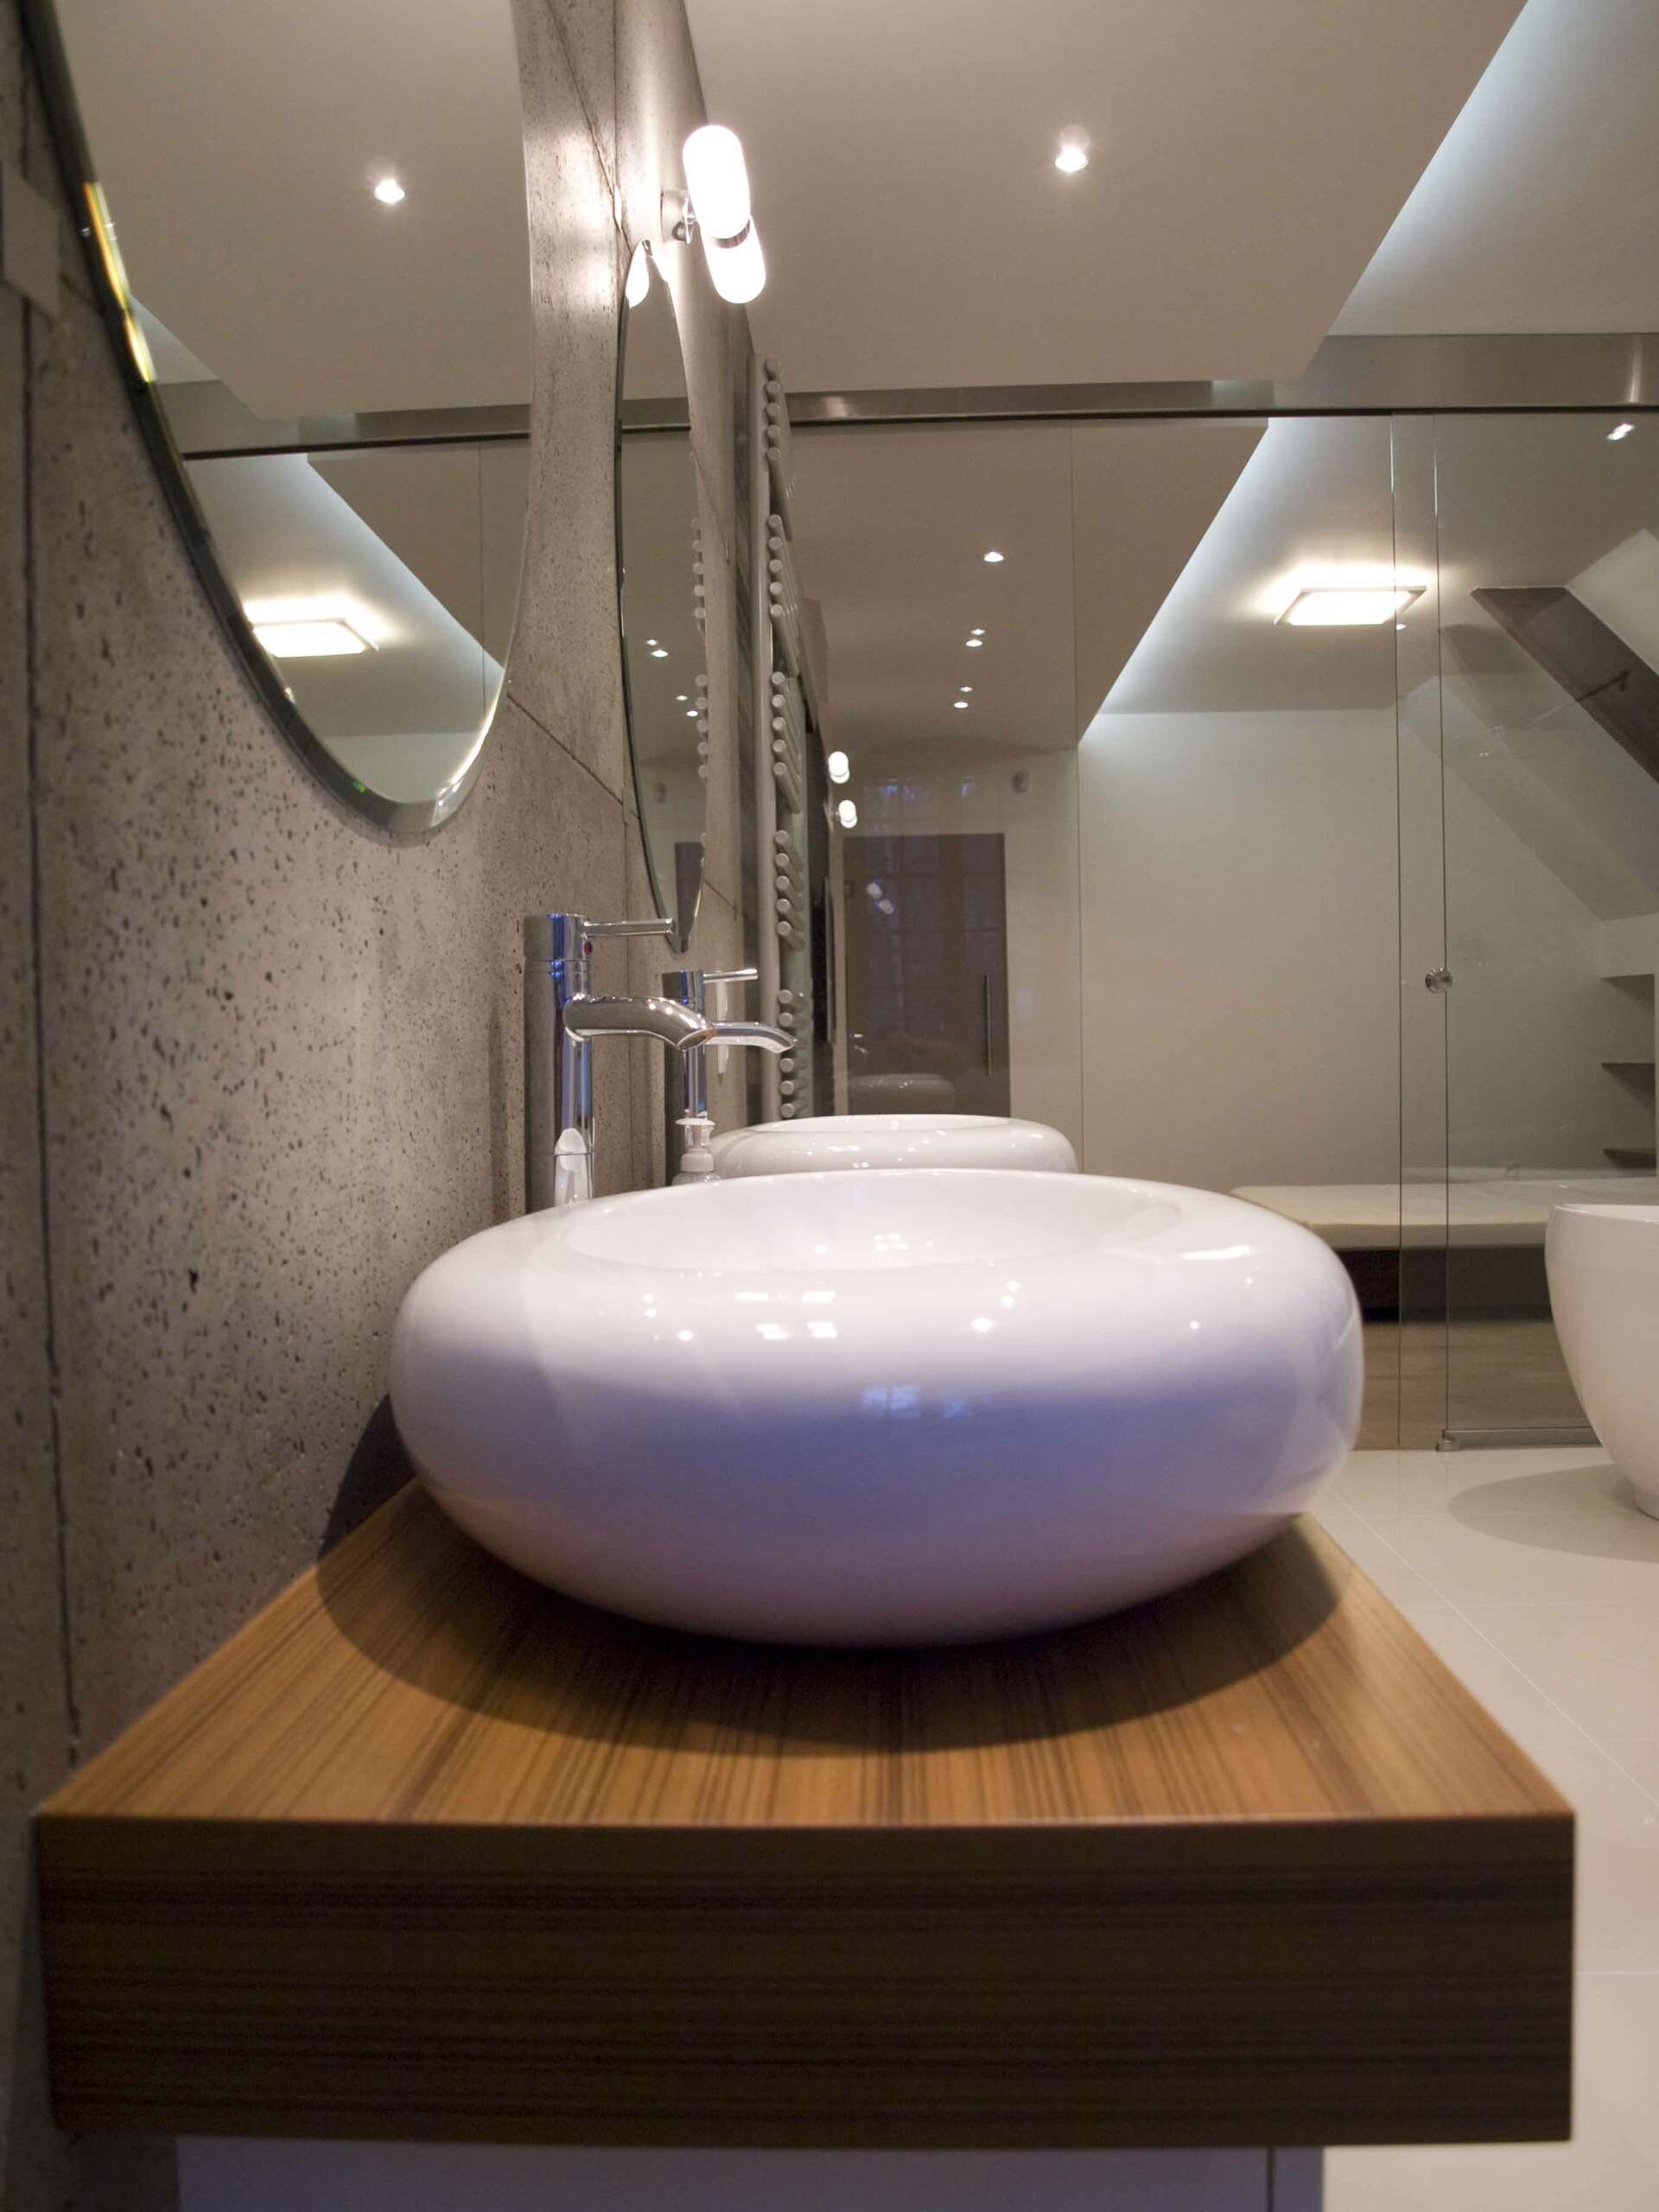 beton-architektoniczny-w-łazience